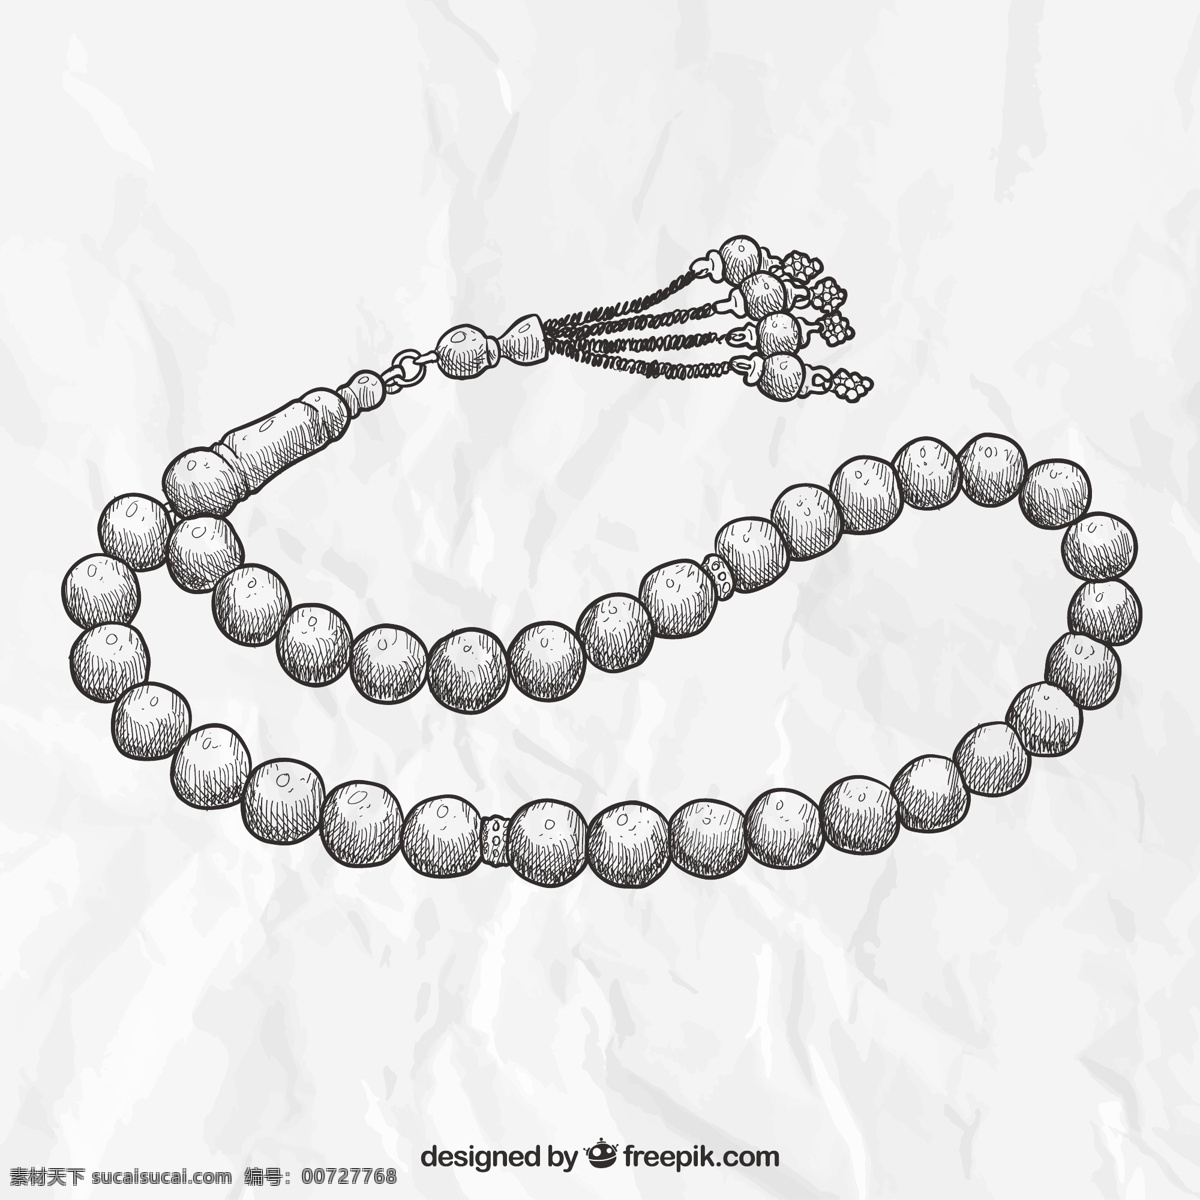 手绘项链 一方面 手绘 制图 珍珠 项链 宝石 粗略的绘制 白色